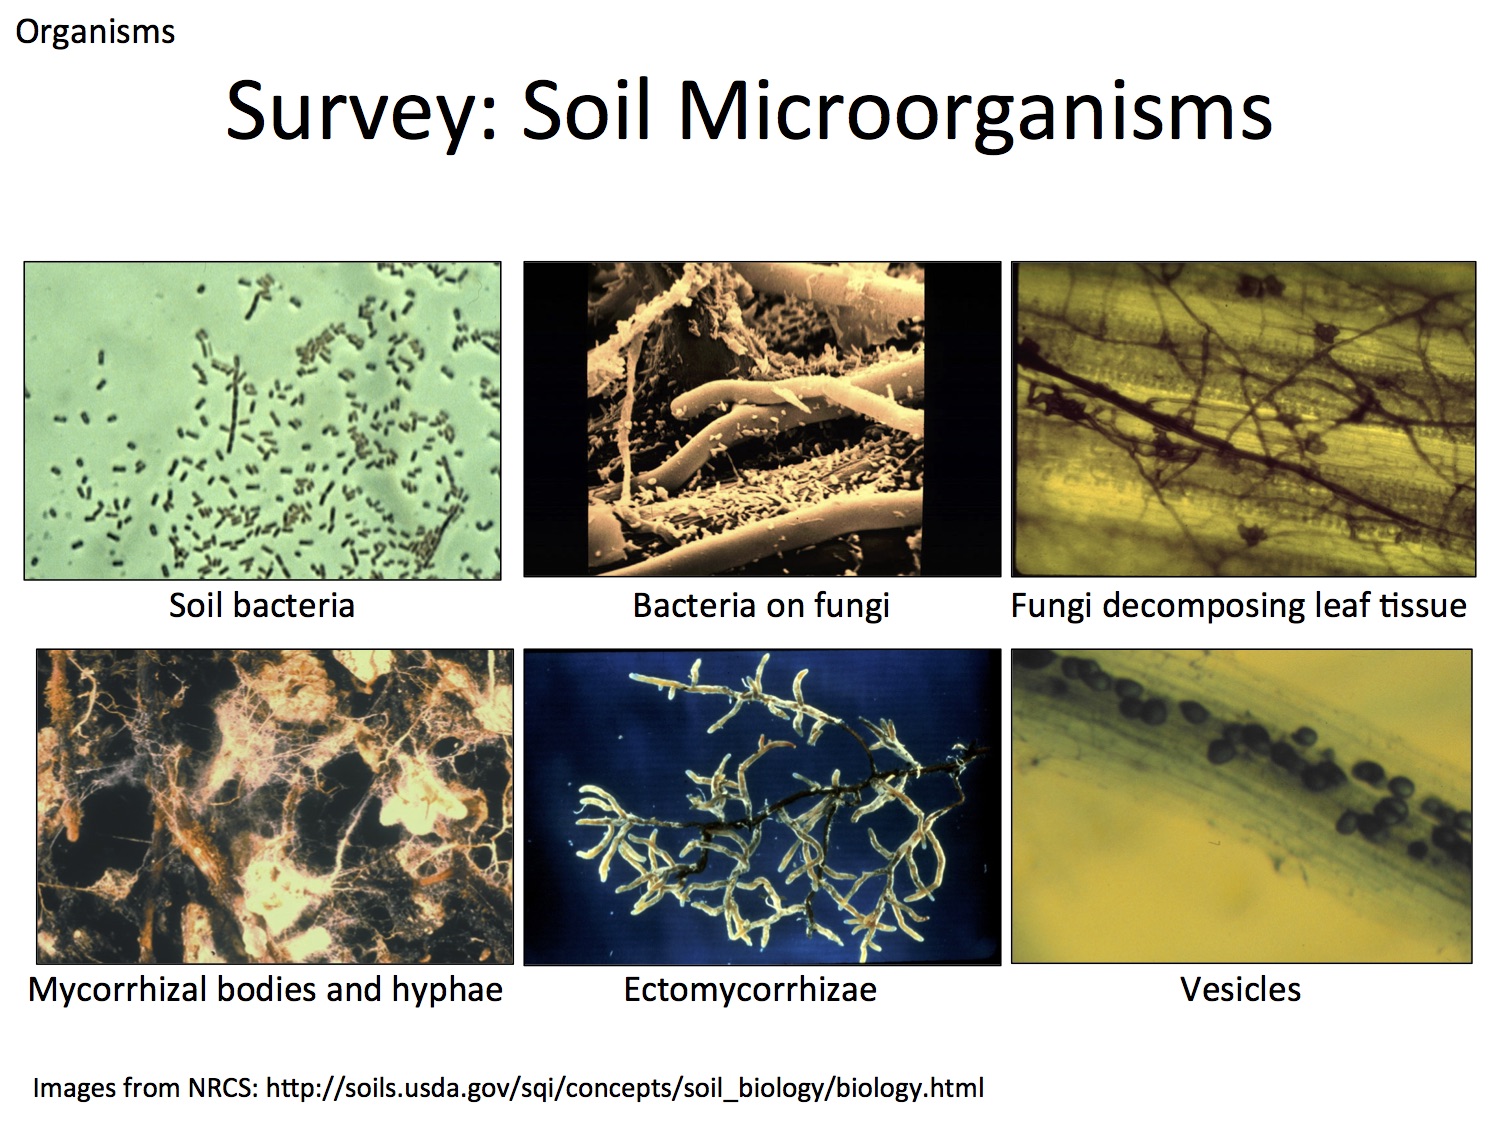 Soil organisms